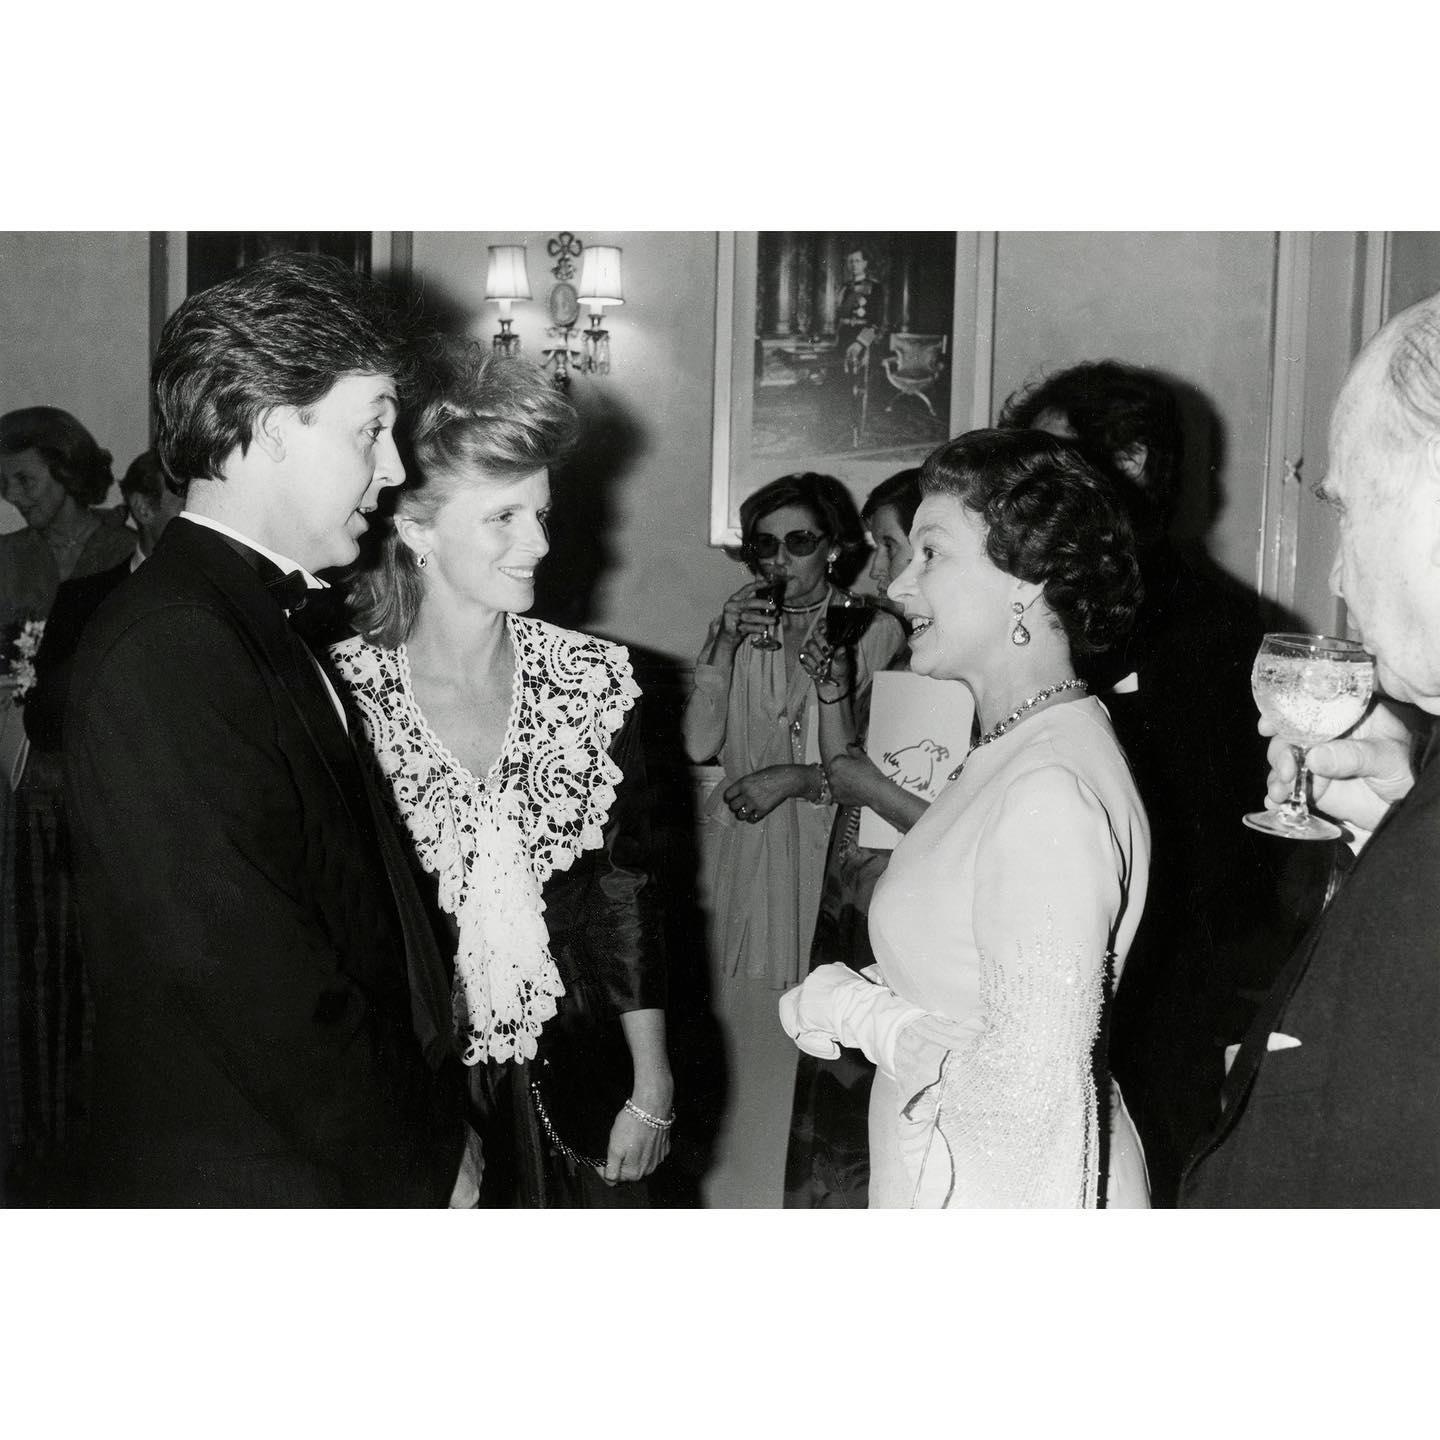 Paul McCartney and Queen Elizabeth II